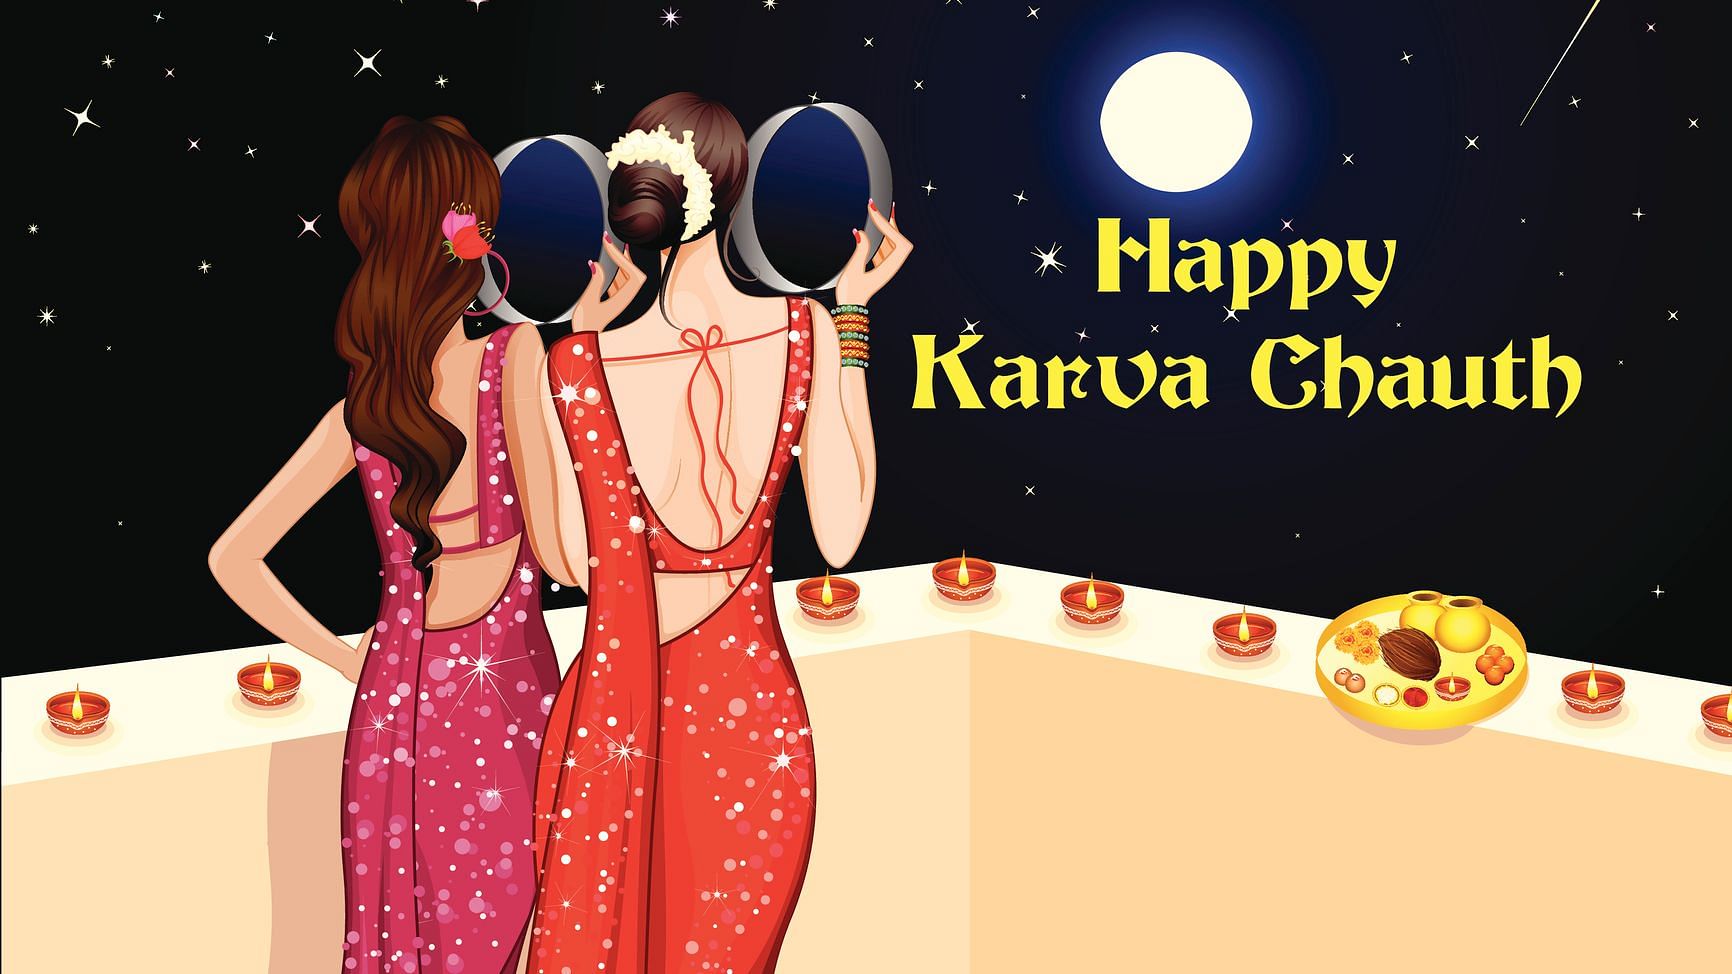 Happy Karwa Chauth 2019 Wishes in Hindi for Husband/Wife/Love: करवा चौथ पर पति-पत्नी एक-दूसरे को खास संदेशों से करें विश.